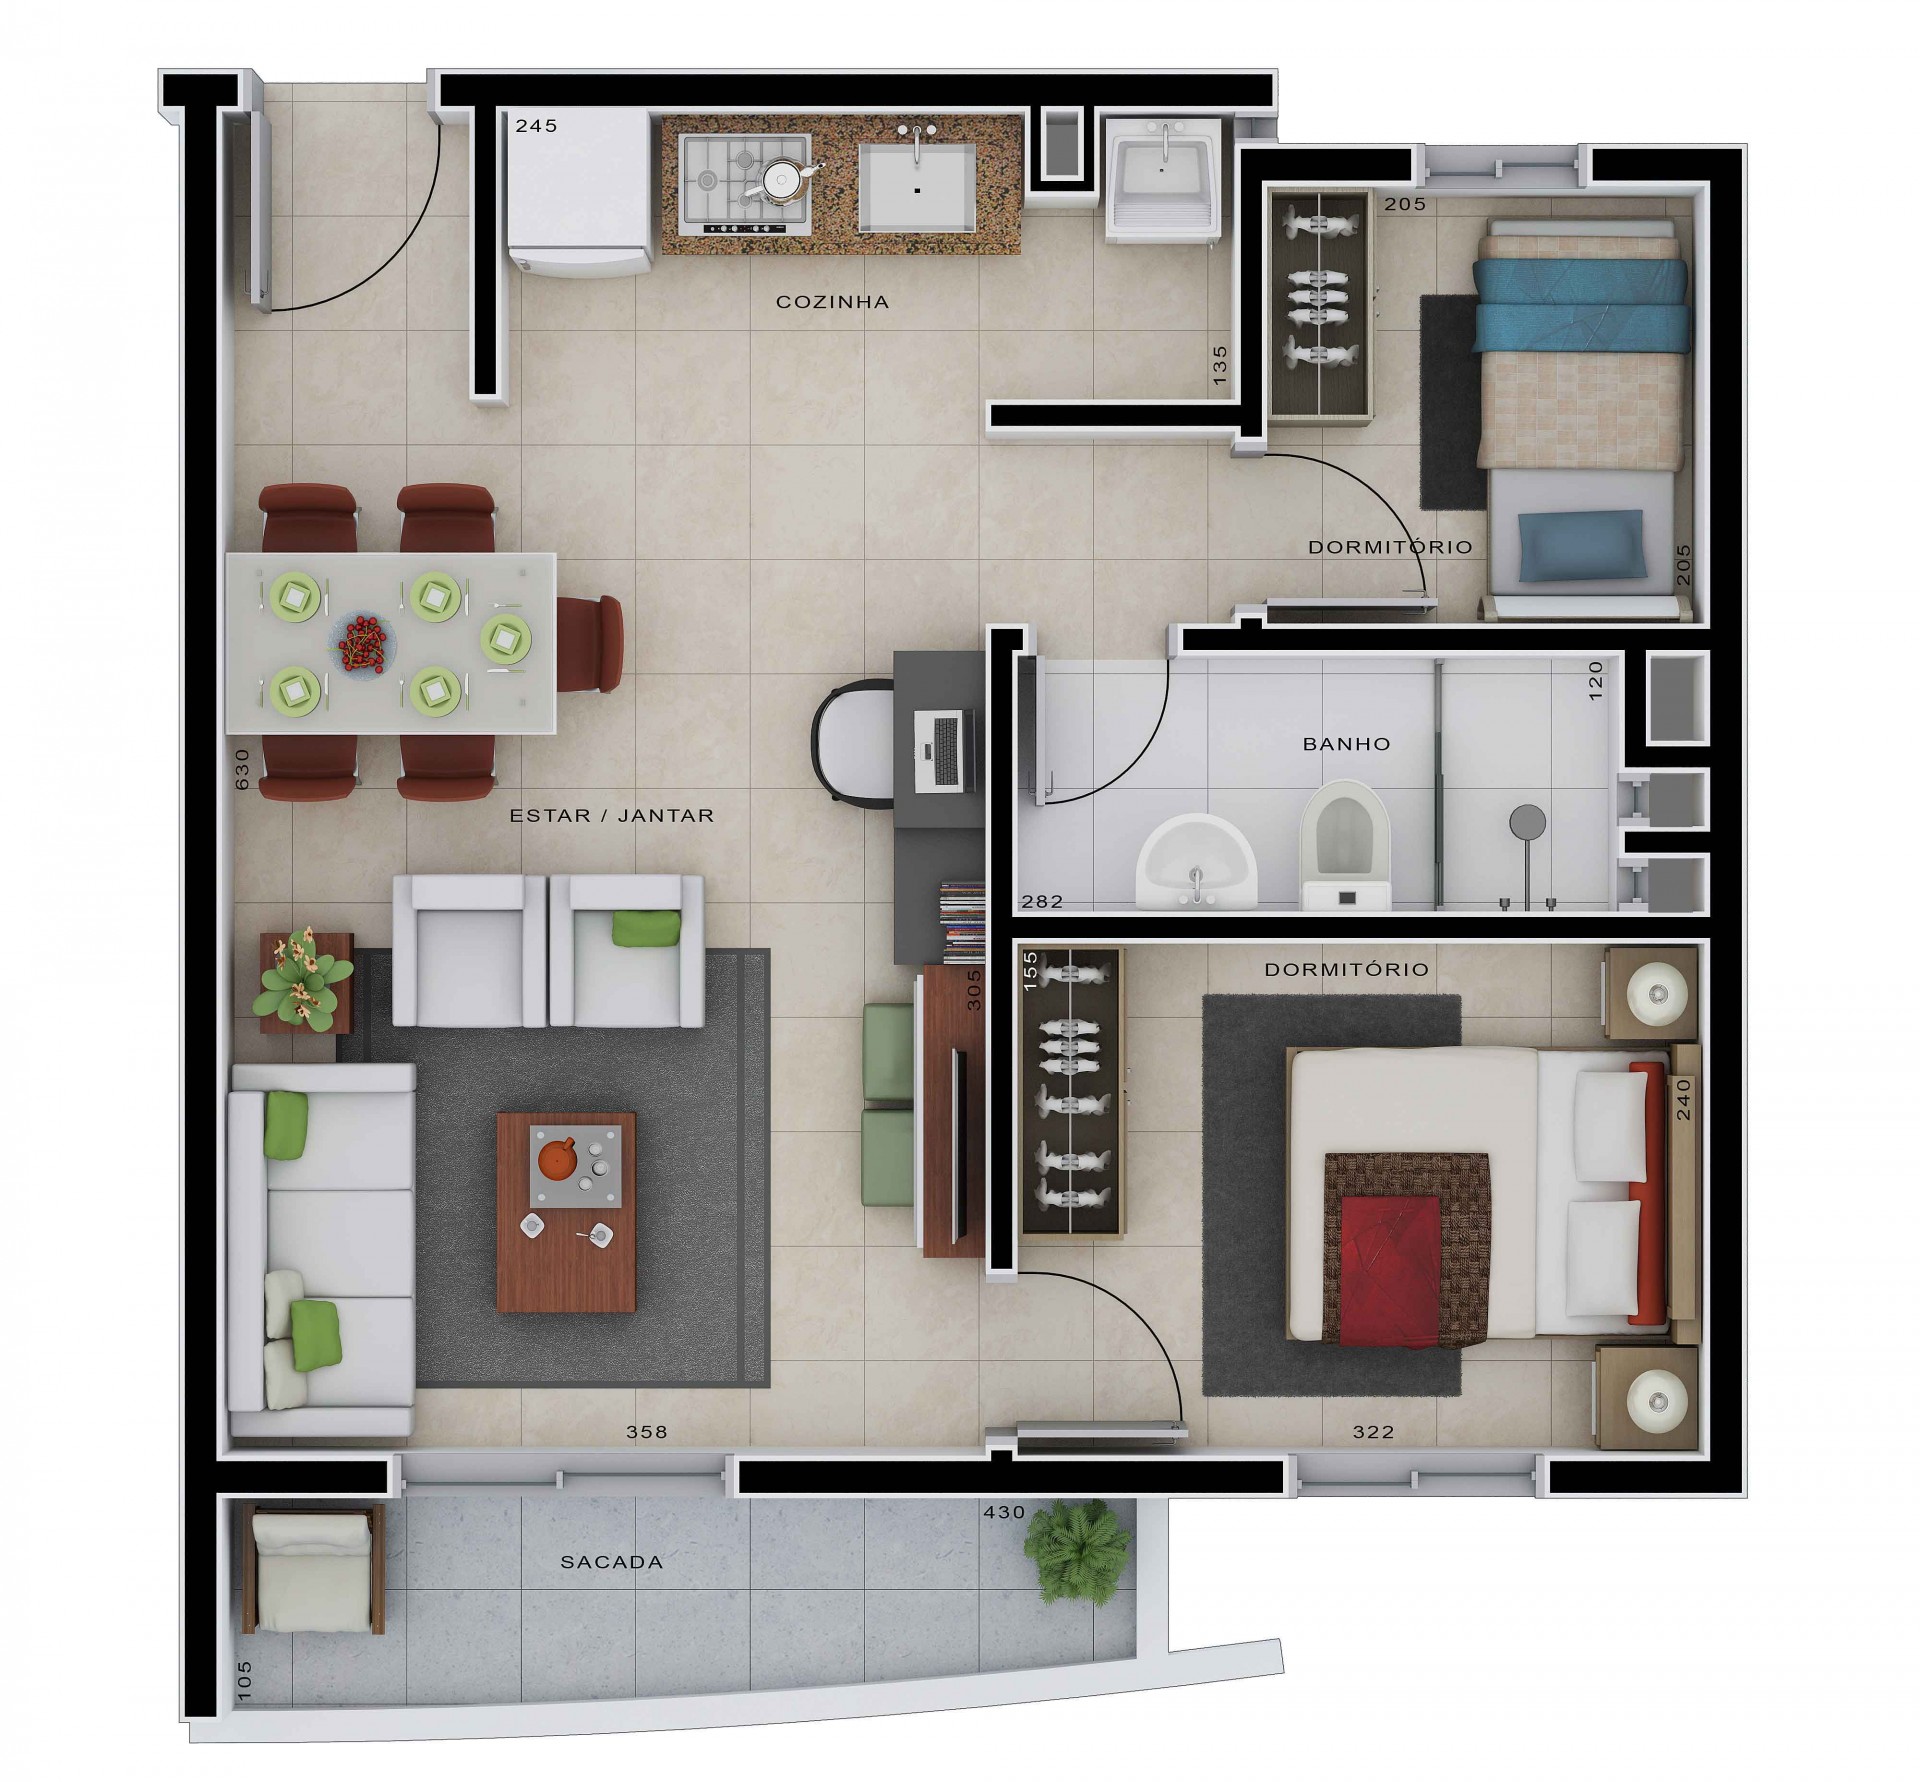 Apartamento base com 2 dormitórios - Frente